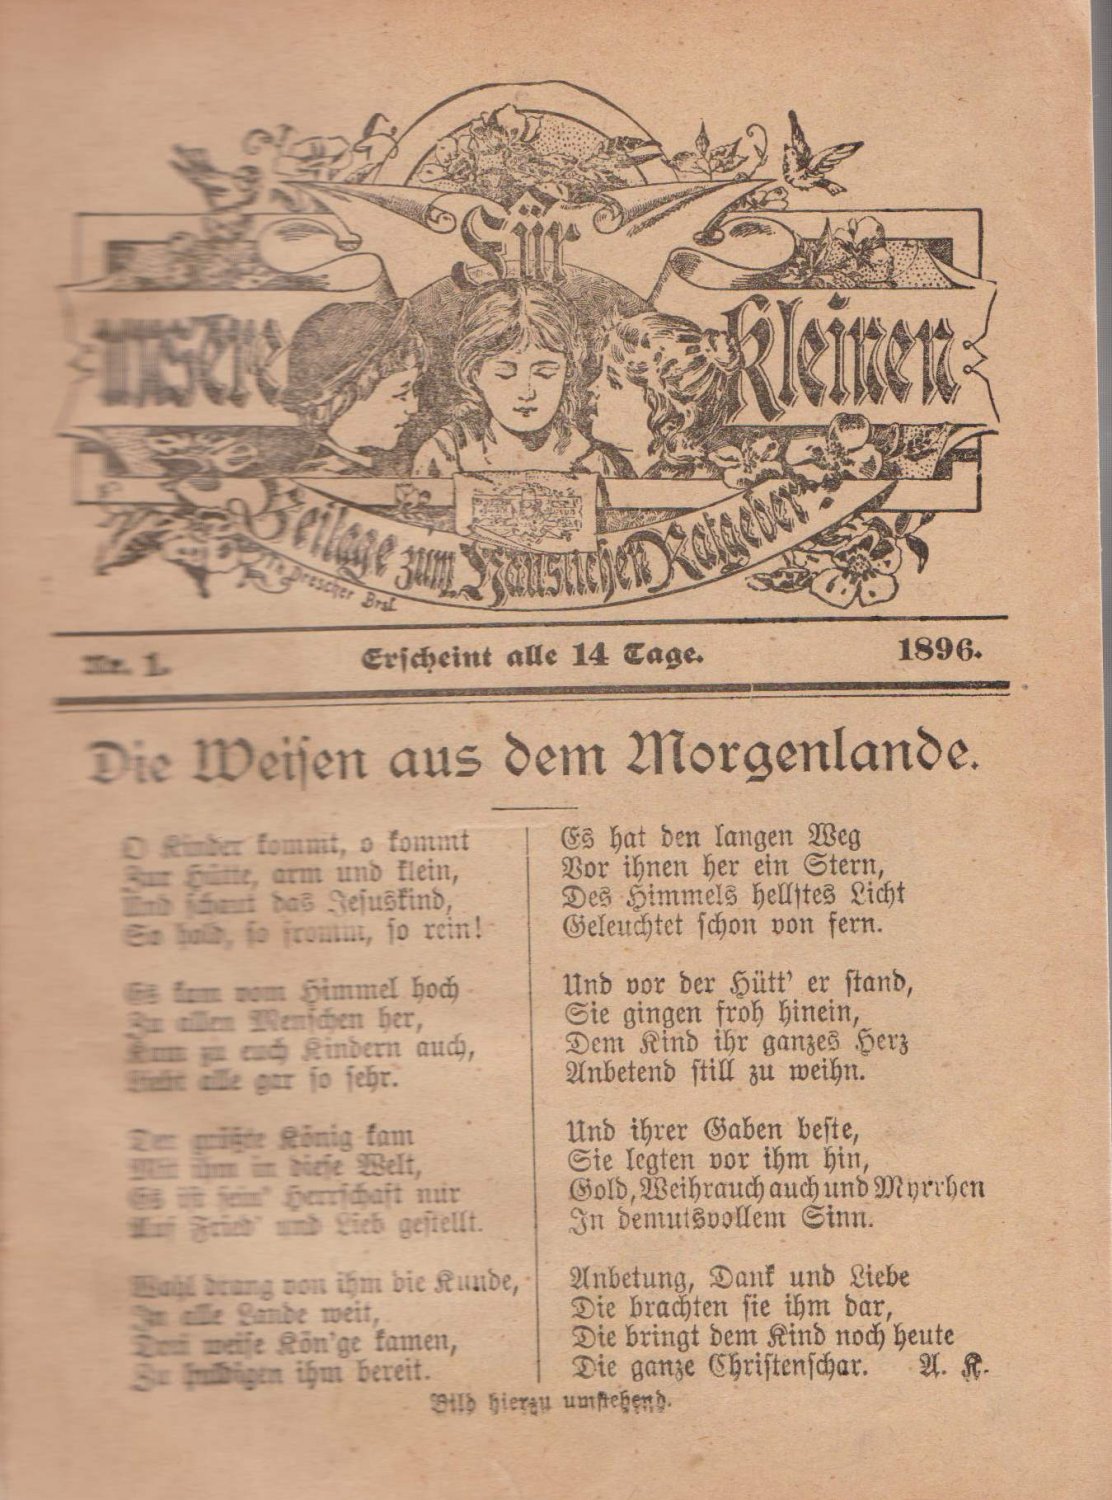   Für unsere Kleinen. Beilage zum Häuslichen Ratgeber. Erscheint alle 14 Tage. (Kinderzeitung). (1. - 10. Jahrgang 1891-1900). 